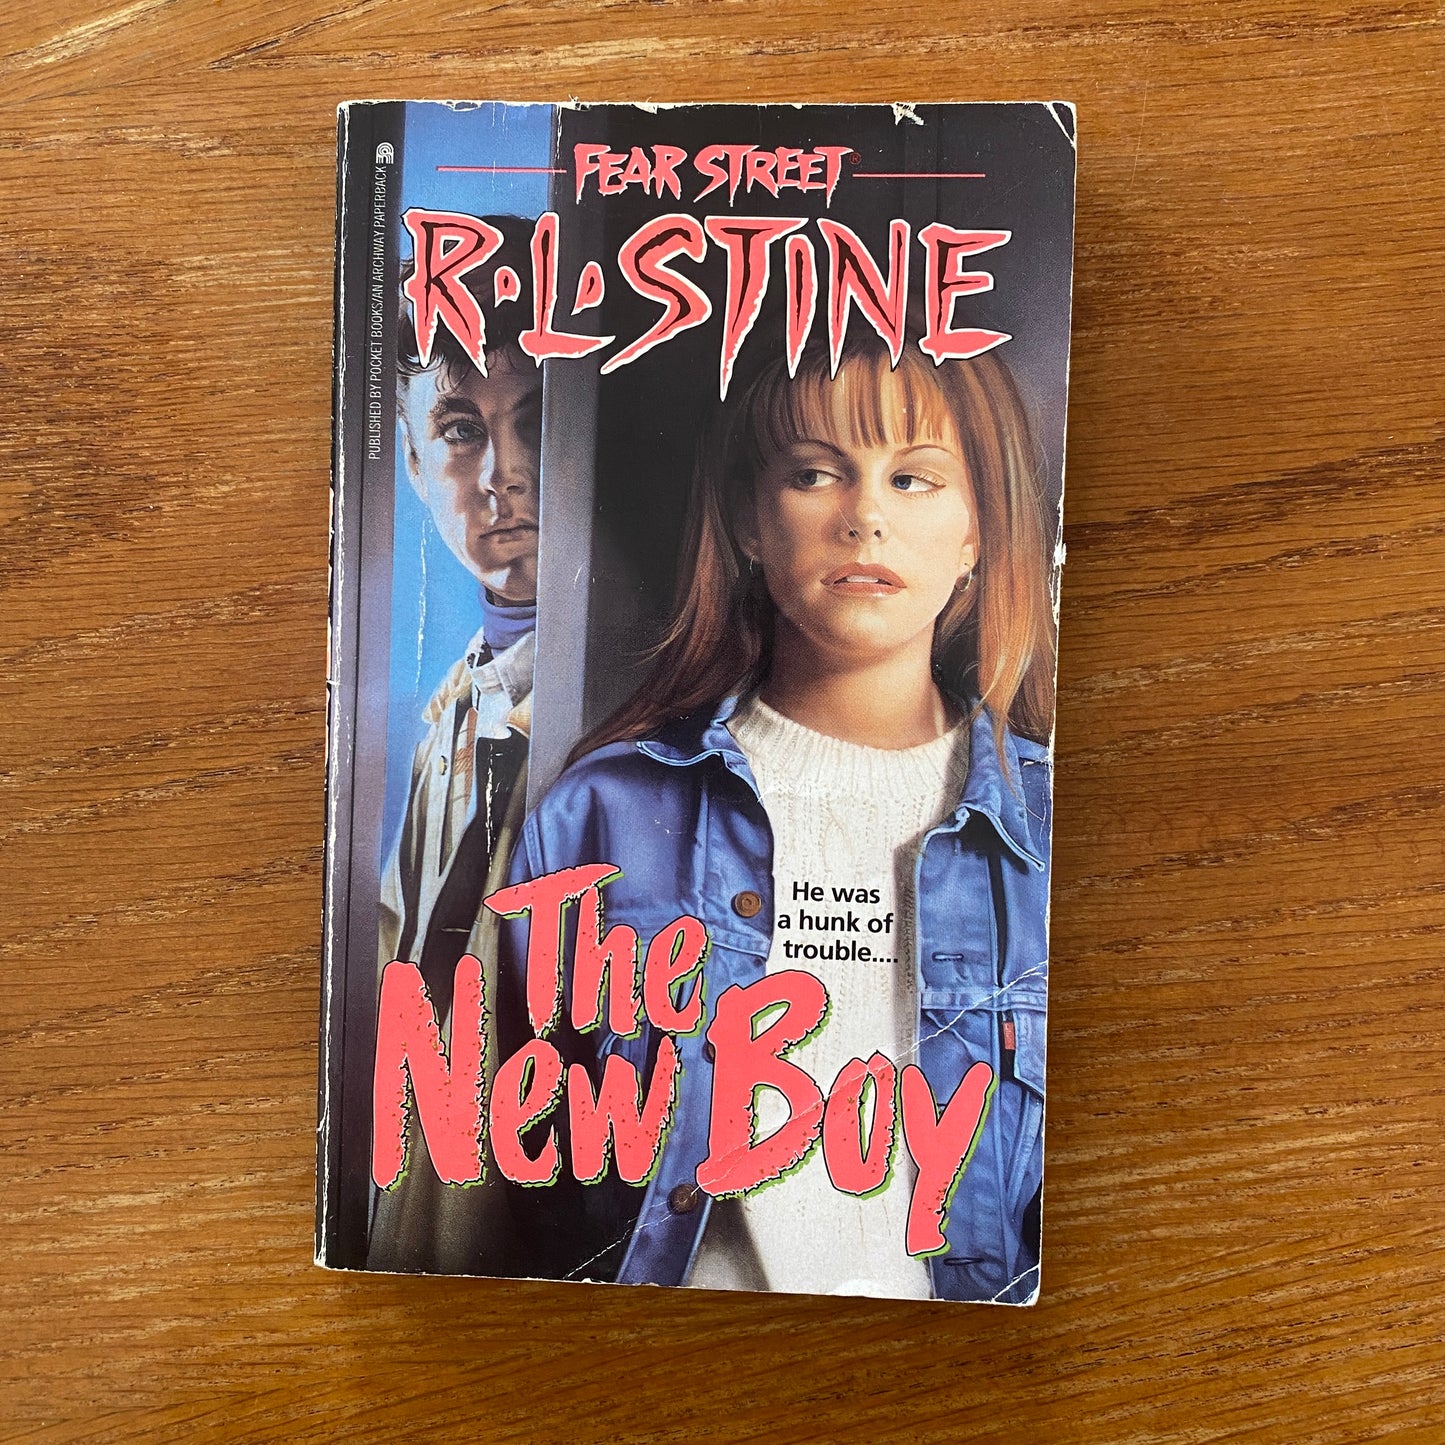 R.L Stine - Fear Street: The New Boy